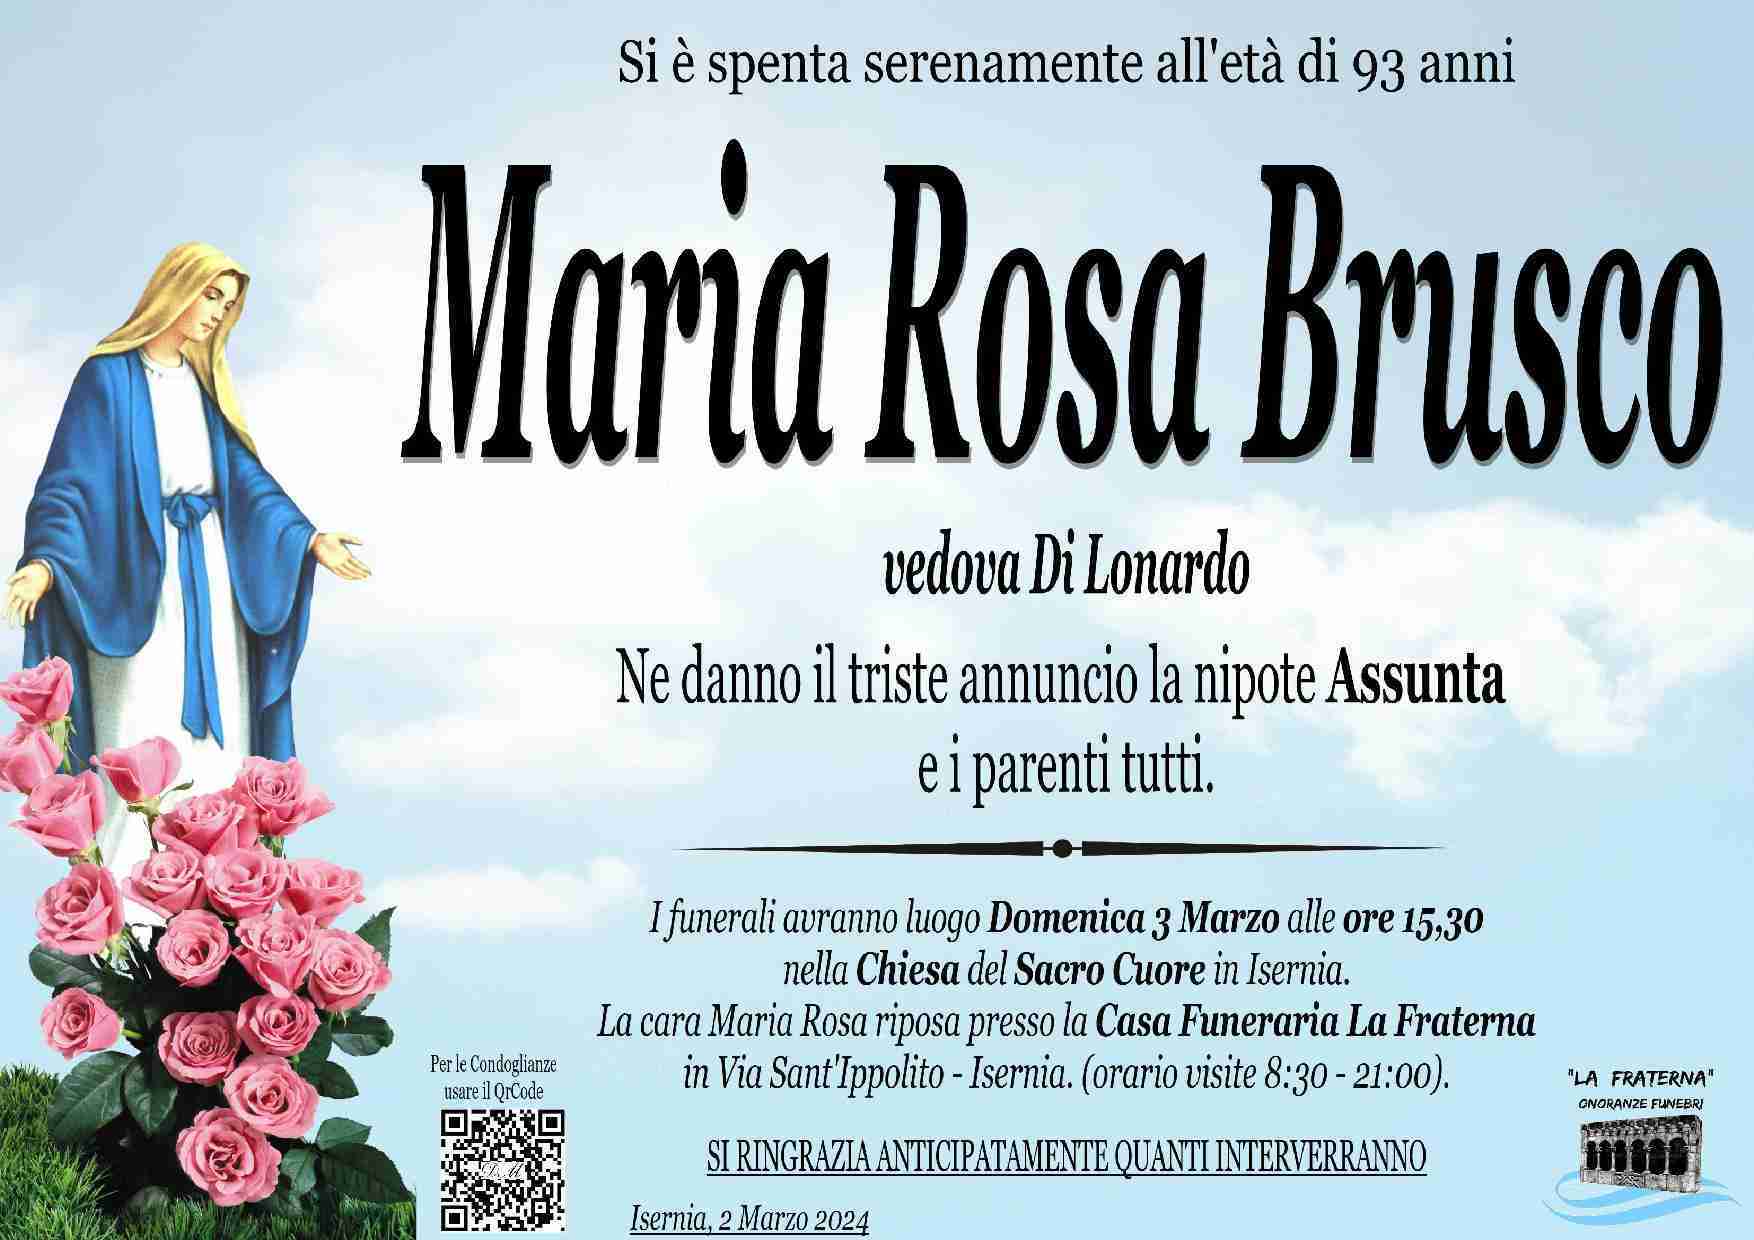 Maria Rosa Brusco